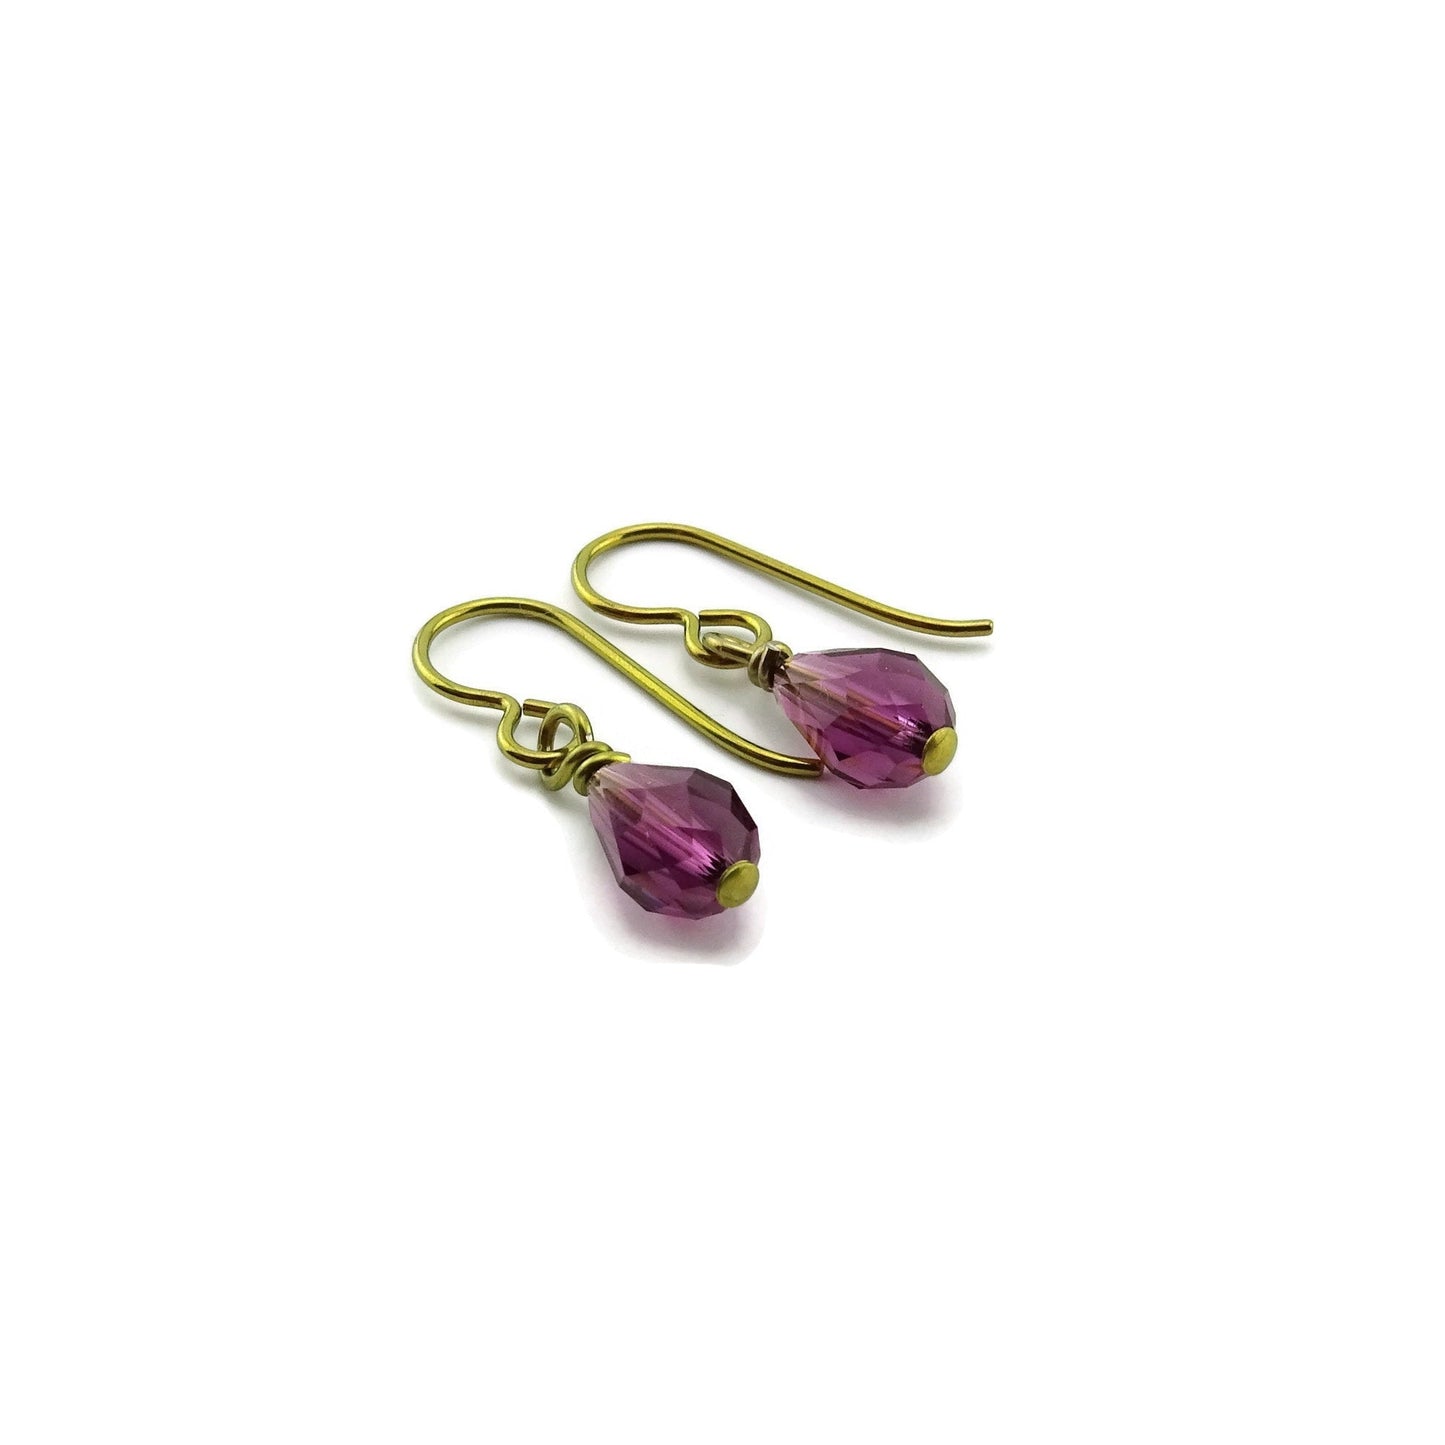 Amethyst Teardrop Crystal Gold Niobium Earrings, Purple Swarovski Crystal Drop Earrings for Sensitive Ears, Nickel Free Hypoallergenic